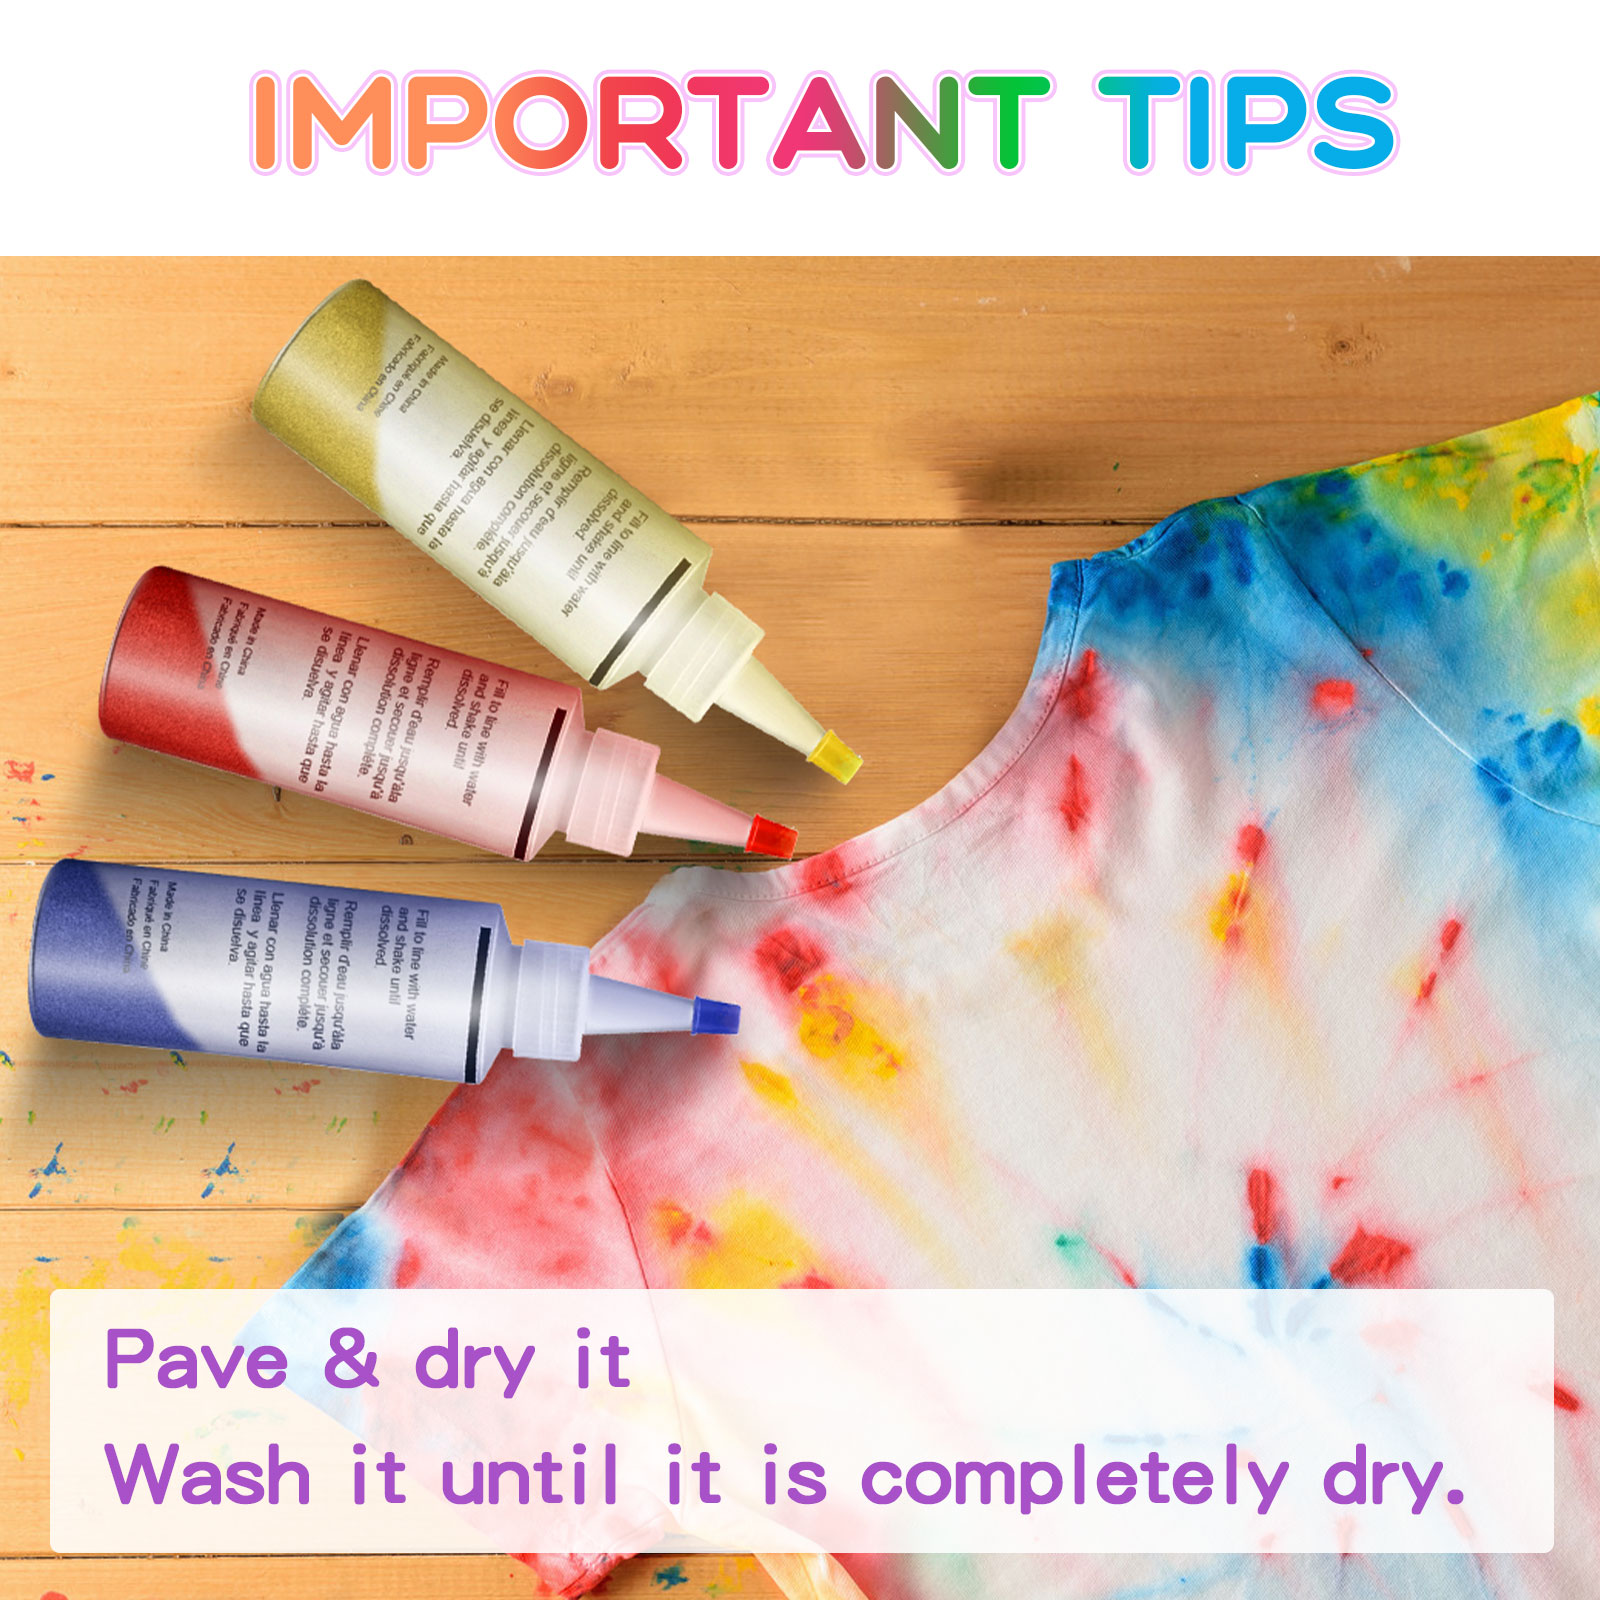 Tie-Dye-DIY-Kit-5-Colors-Fabric-Textile-Shirts-Paints-Permanent-Paint-for-Clothes-Shirt-Dress-Homema-1906746-4